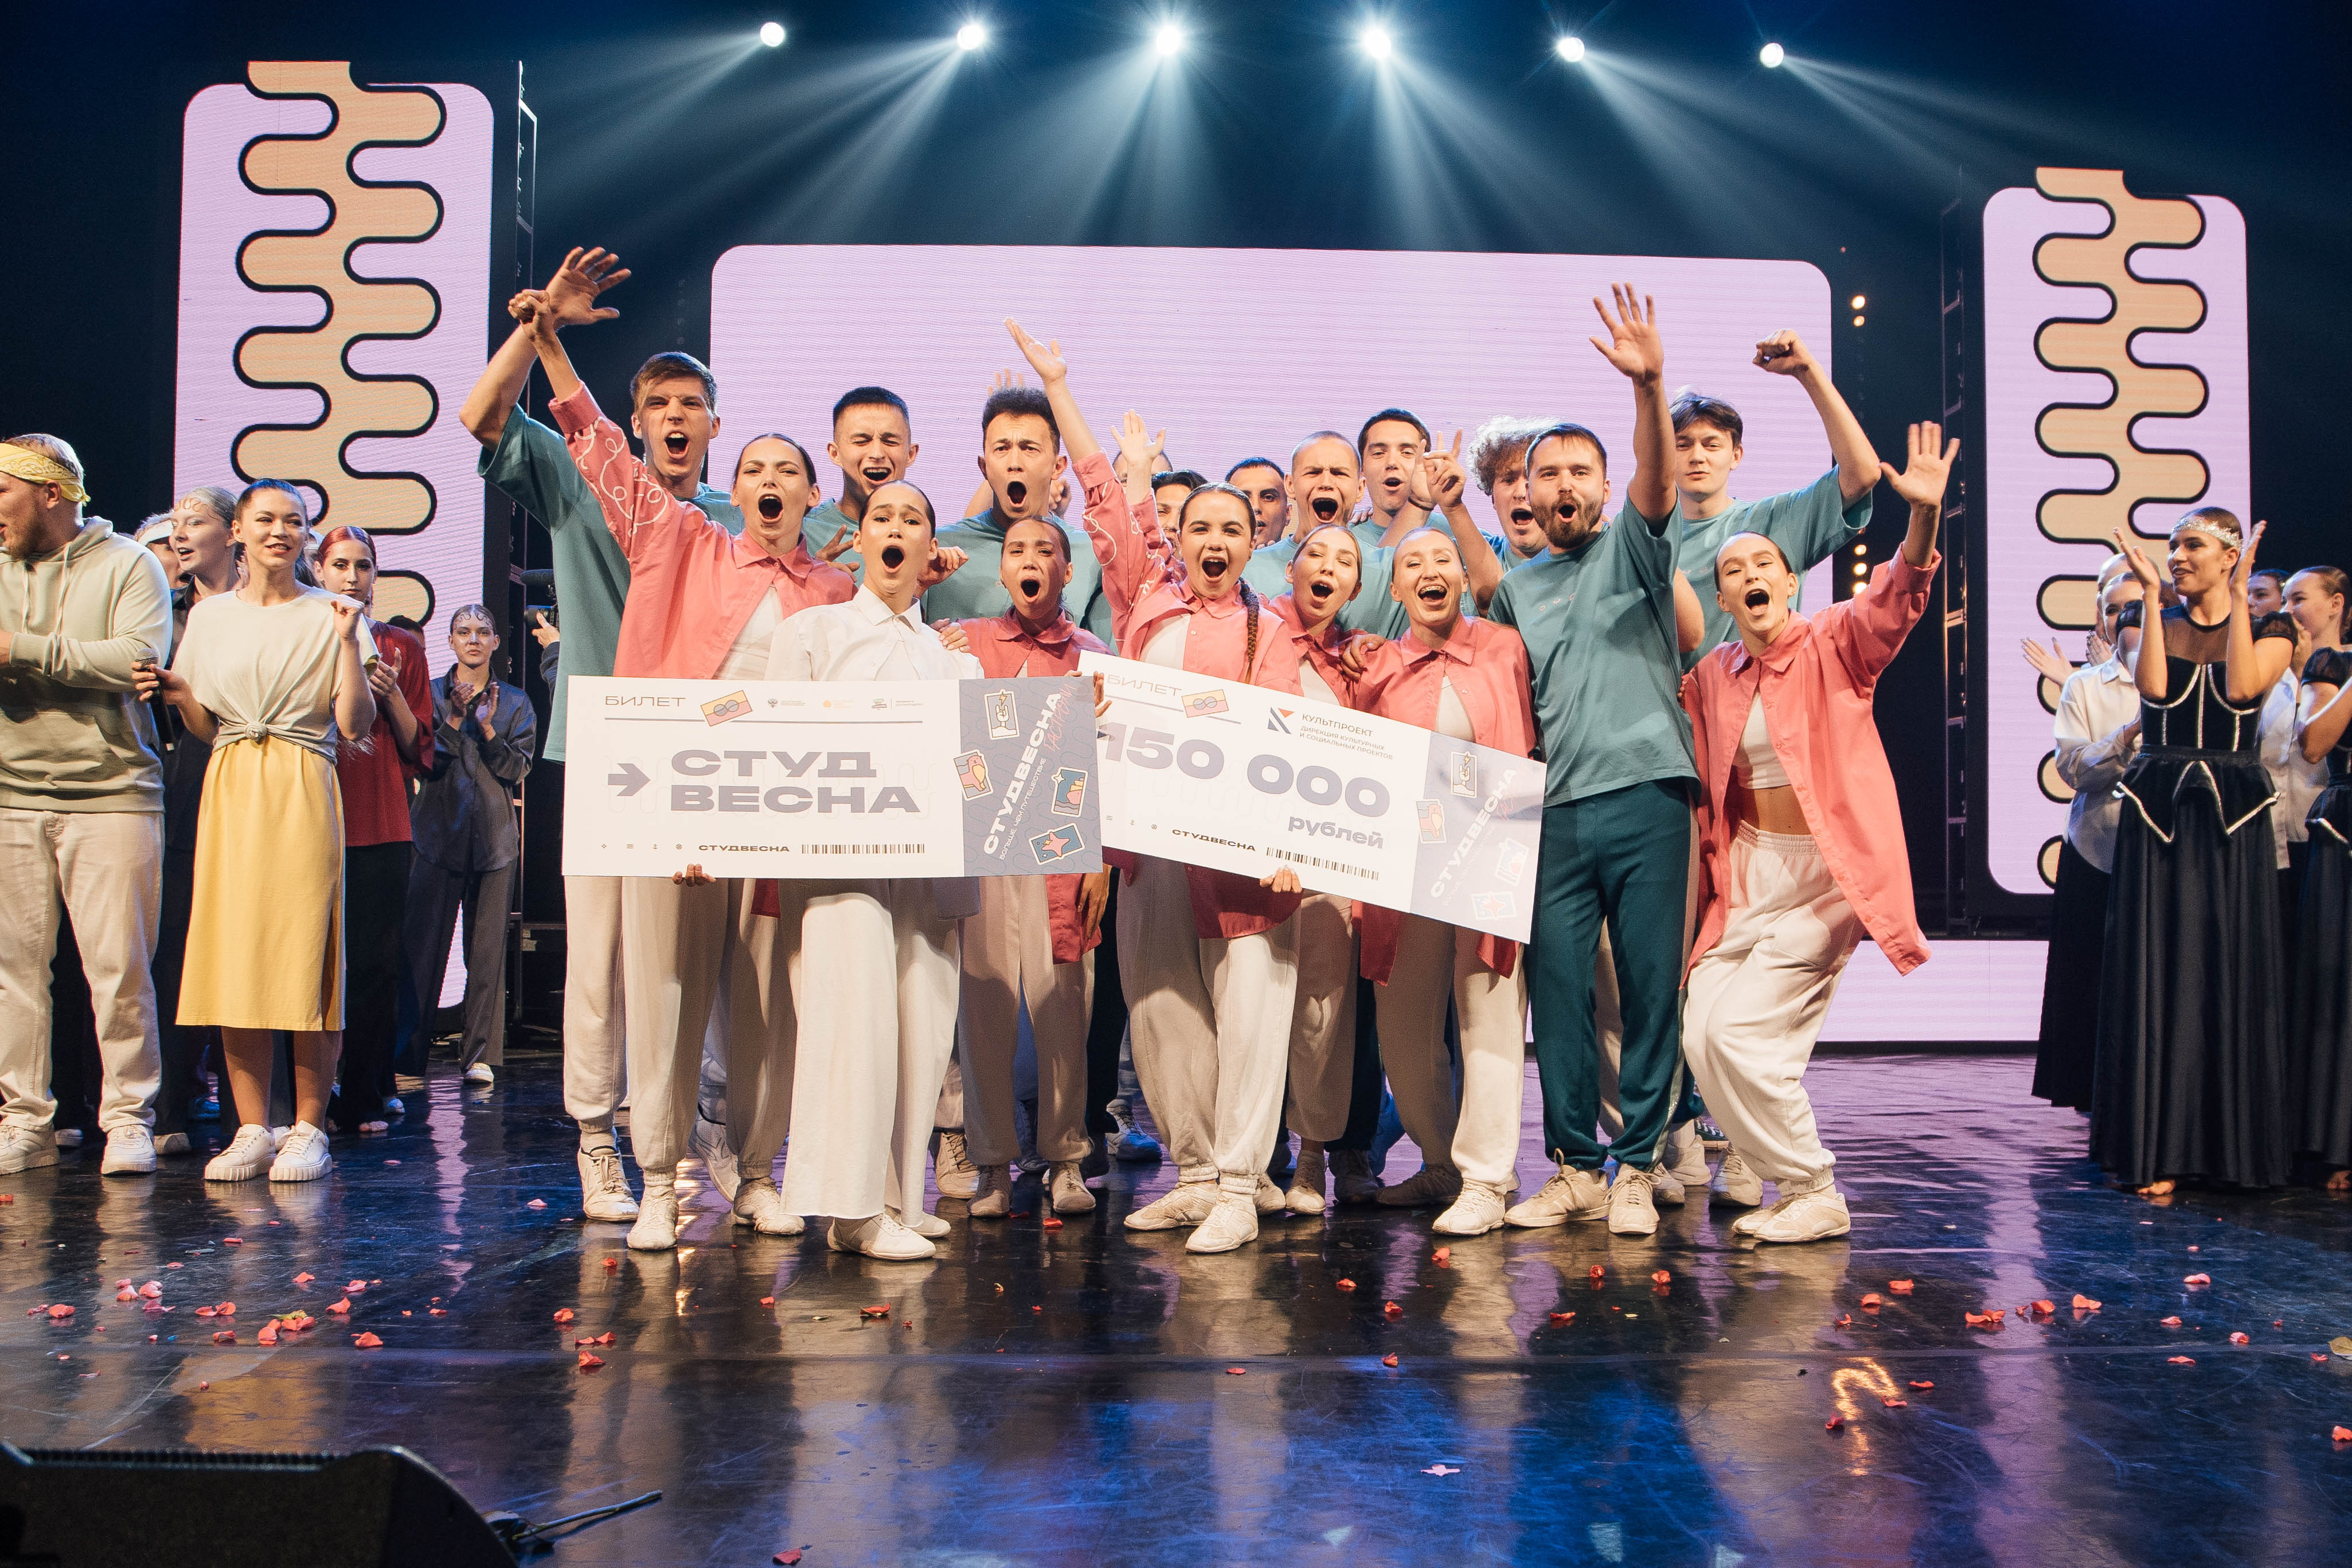  В Молодёжной столице России завершился III Гастрольный тур победителей Российской студенческой весны «Больше, чем путешествие» 